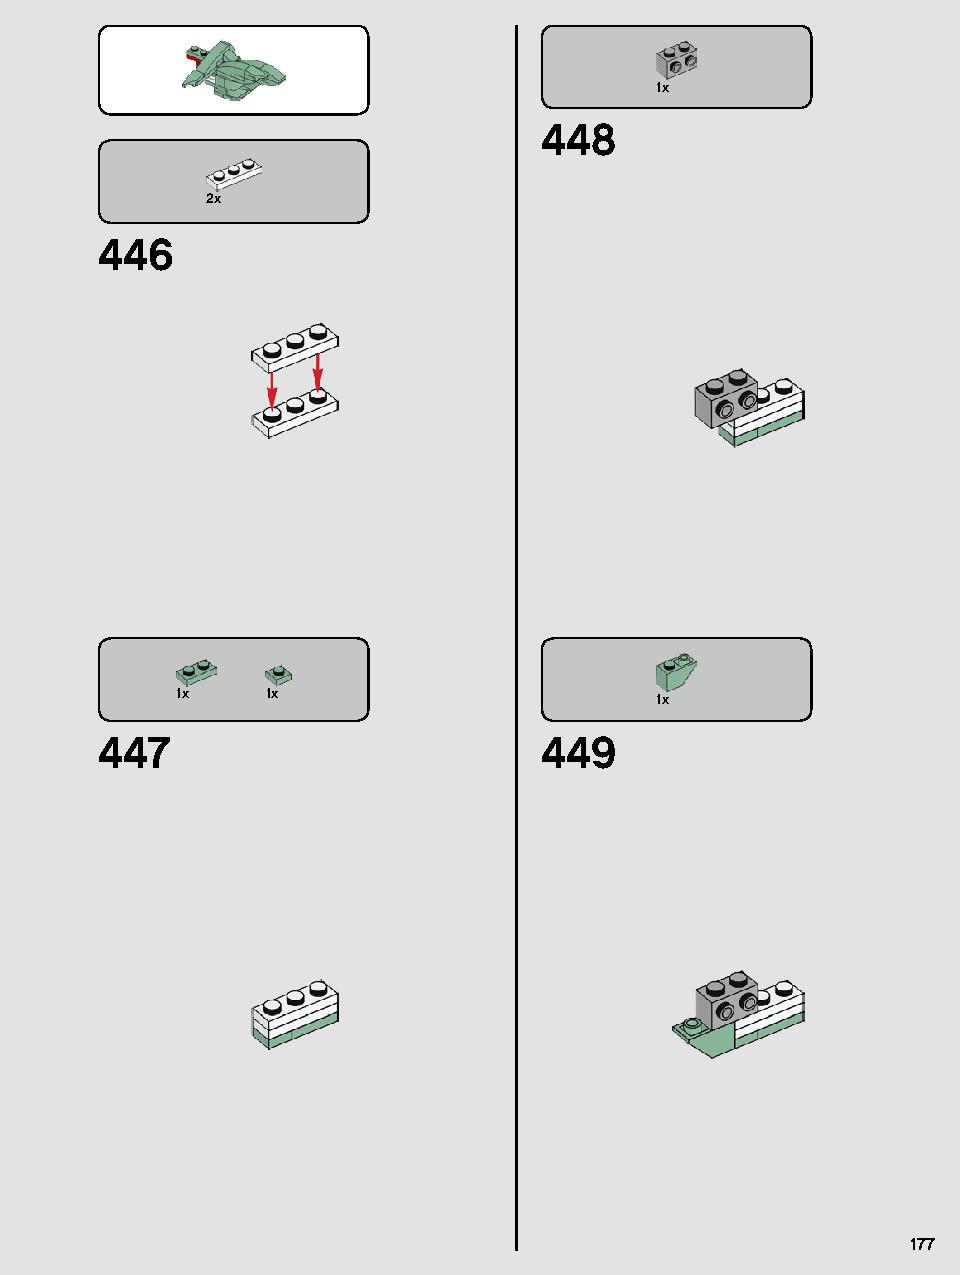 ヨーダ™ 75255 レゴの商品情報 レゴの説明書・組立方法 177 page